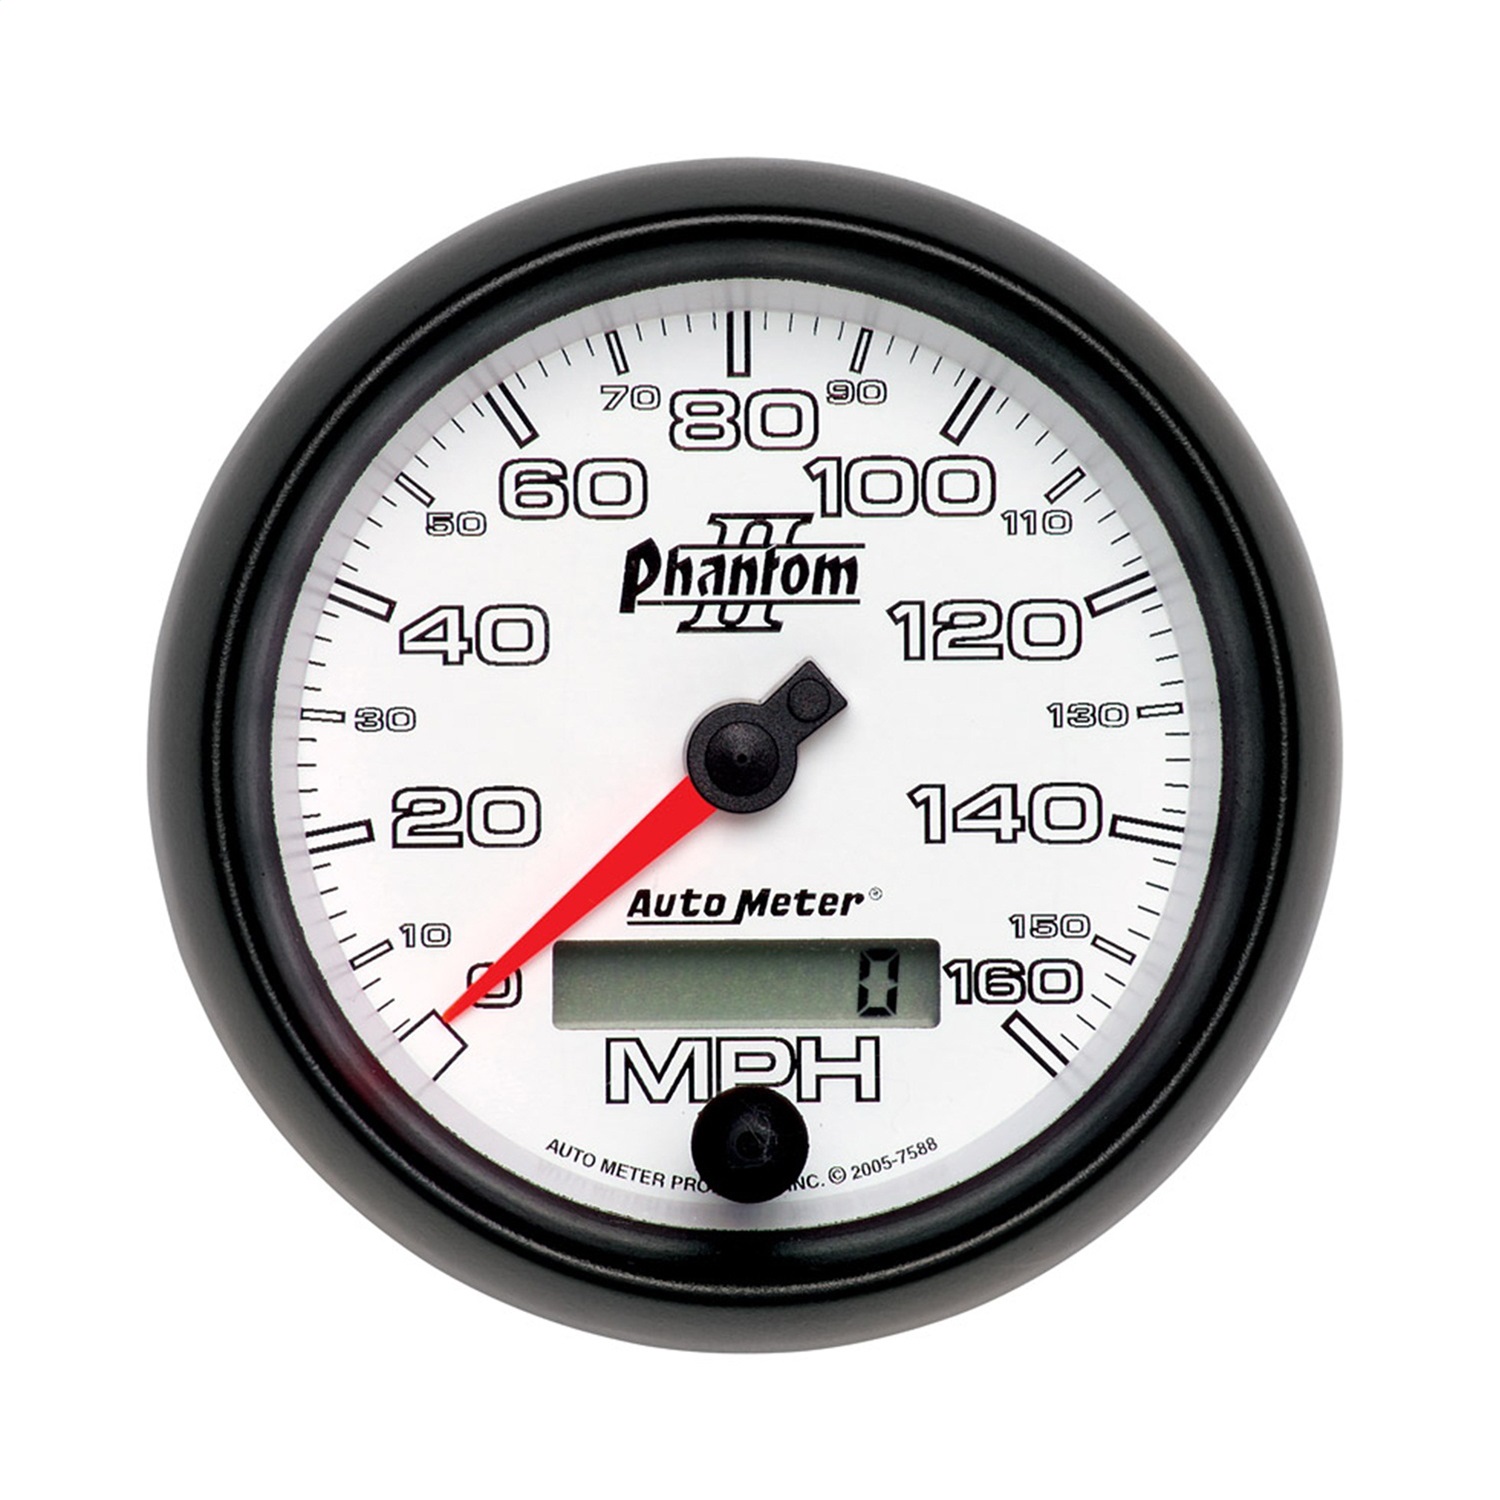 Auto Meter Auto Meter 7588 Phantom II; Programmable Speedometer